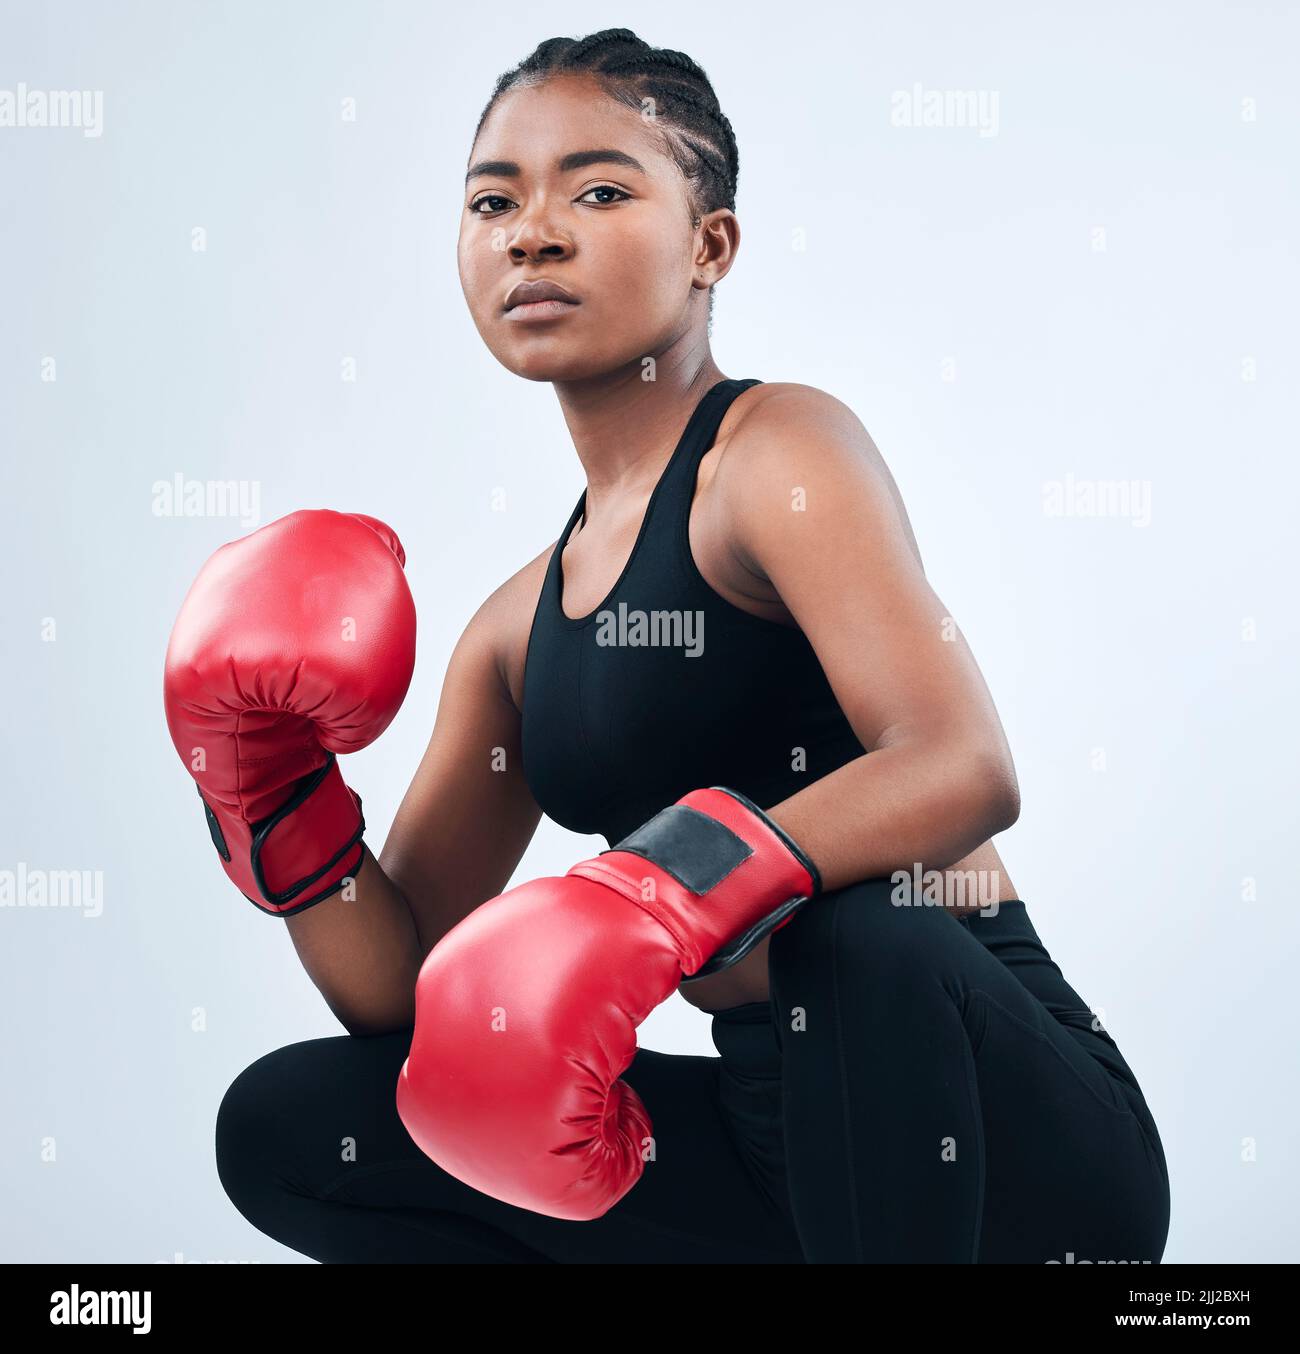 Joven Atractiva Mujer De Fitness Europea Con Guantes De Boxeo Posando En  Estudio Imagen de archivo - Imagen de deportivo, deporte: 233542393